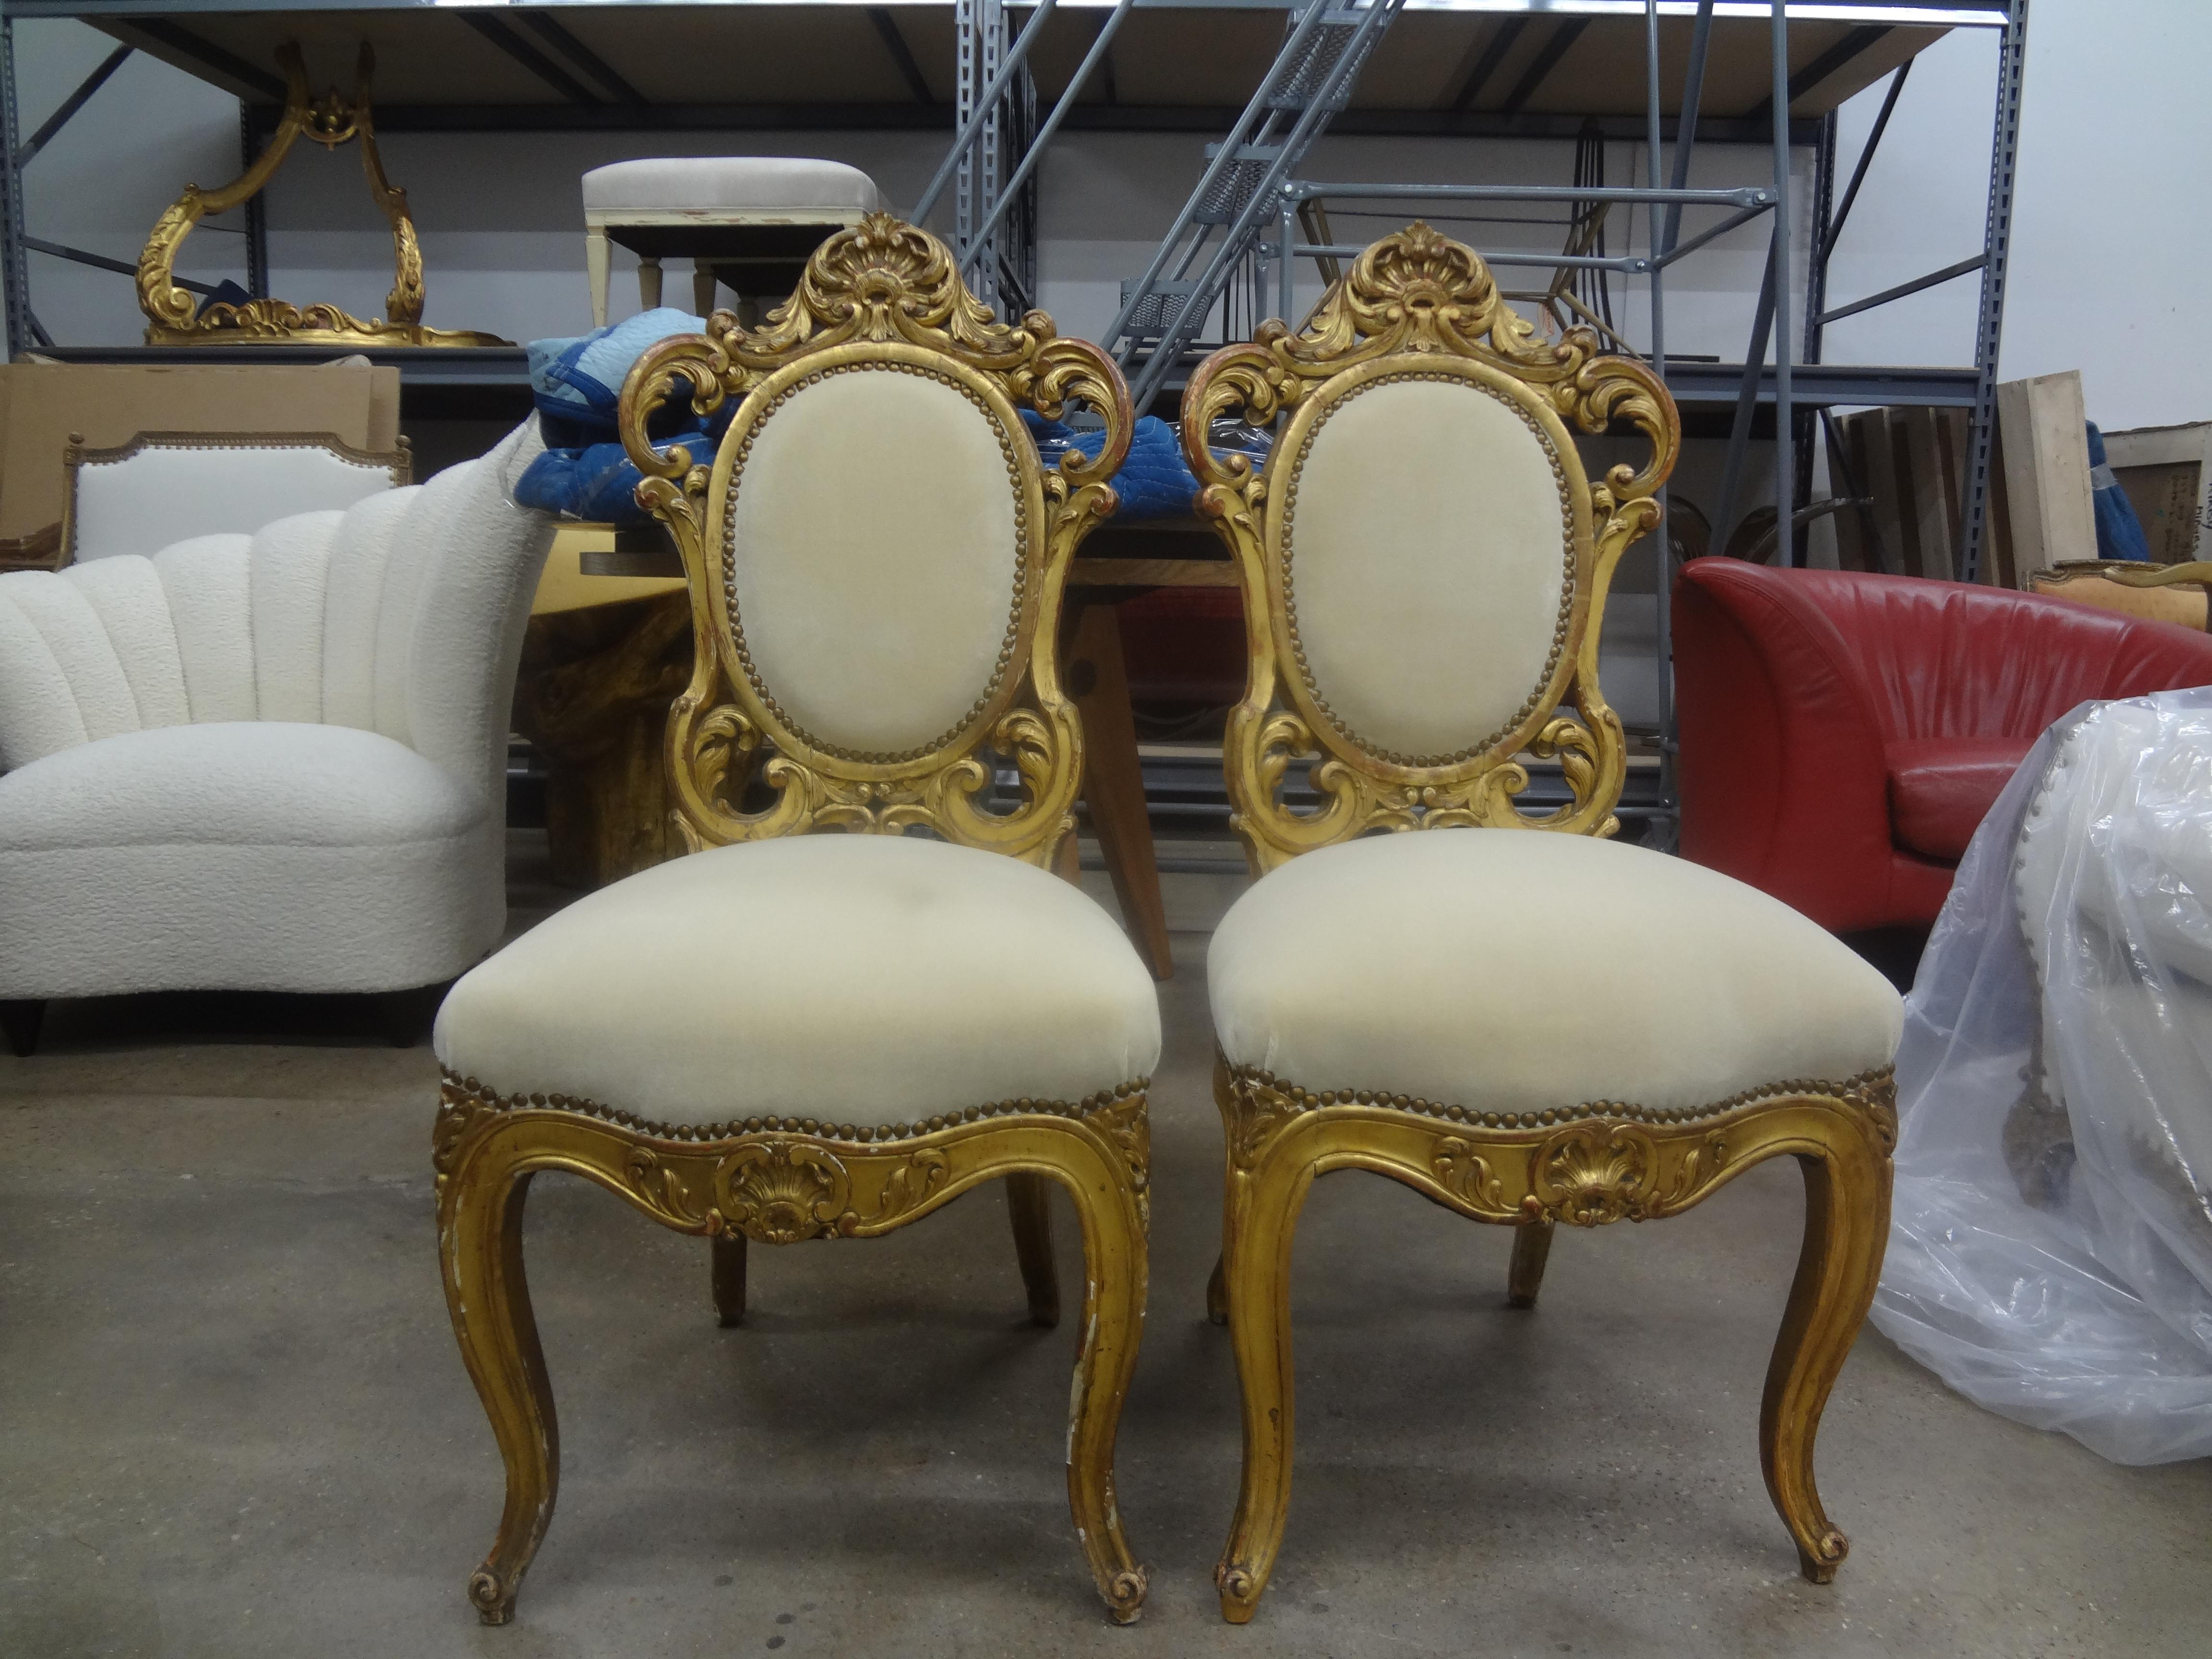 Paire de chaises en bois doré de style baroque italien.
Superbe paire de chaises en bois doré de style baroque romain, vers 1920. Ces chaises inhabituelles ou chaises d'appoint ont été récemment recouvertes de mohair couleur camel avec des têtes de